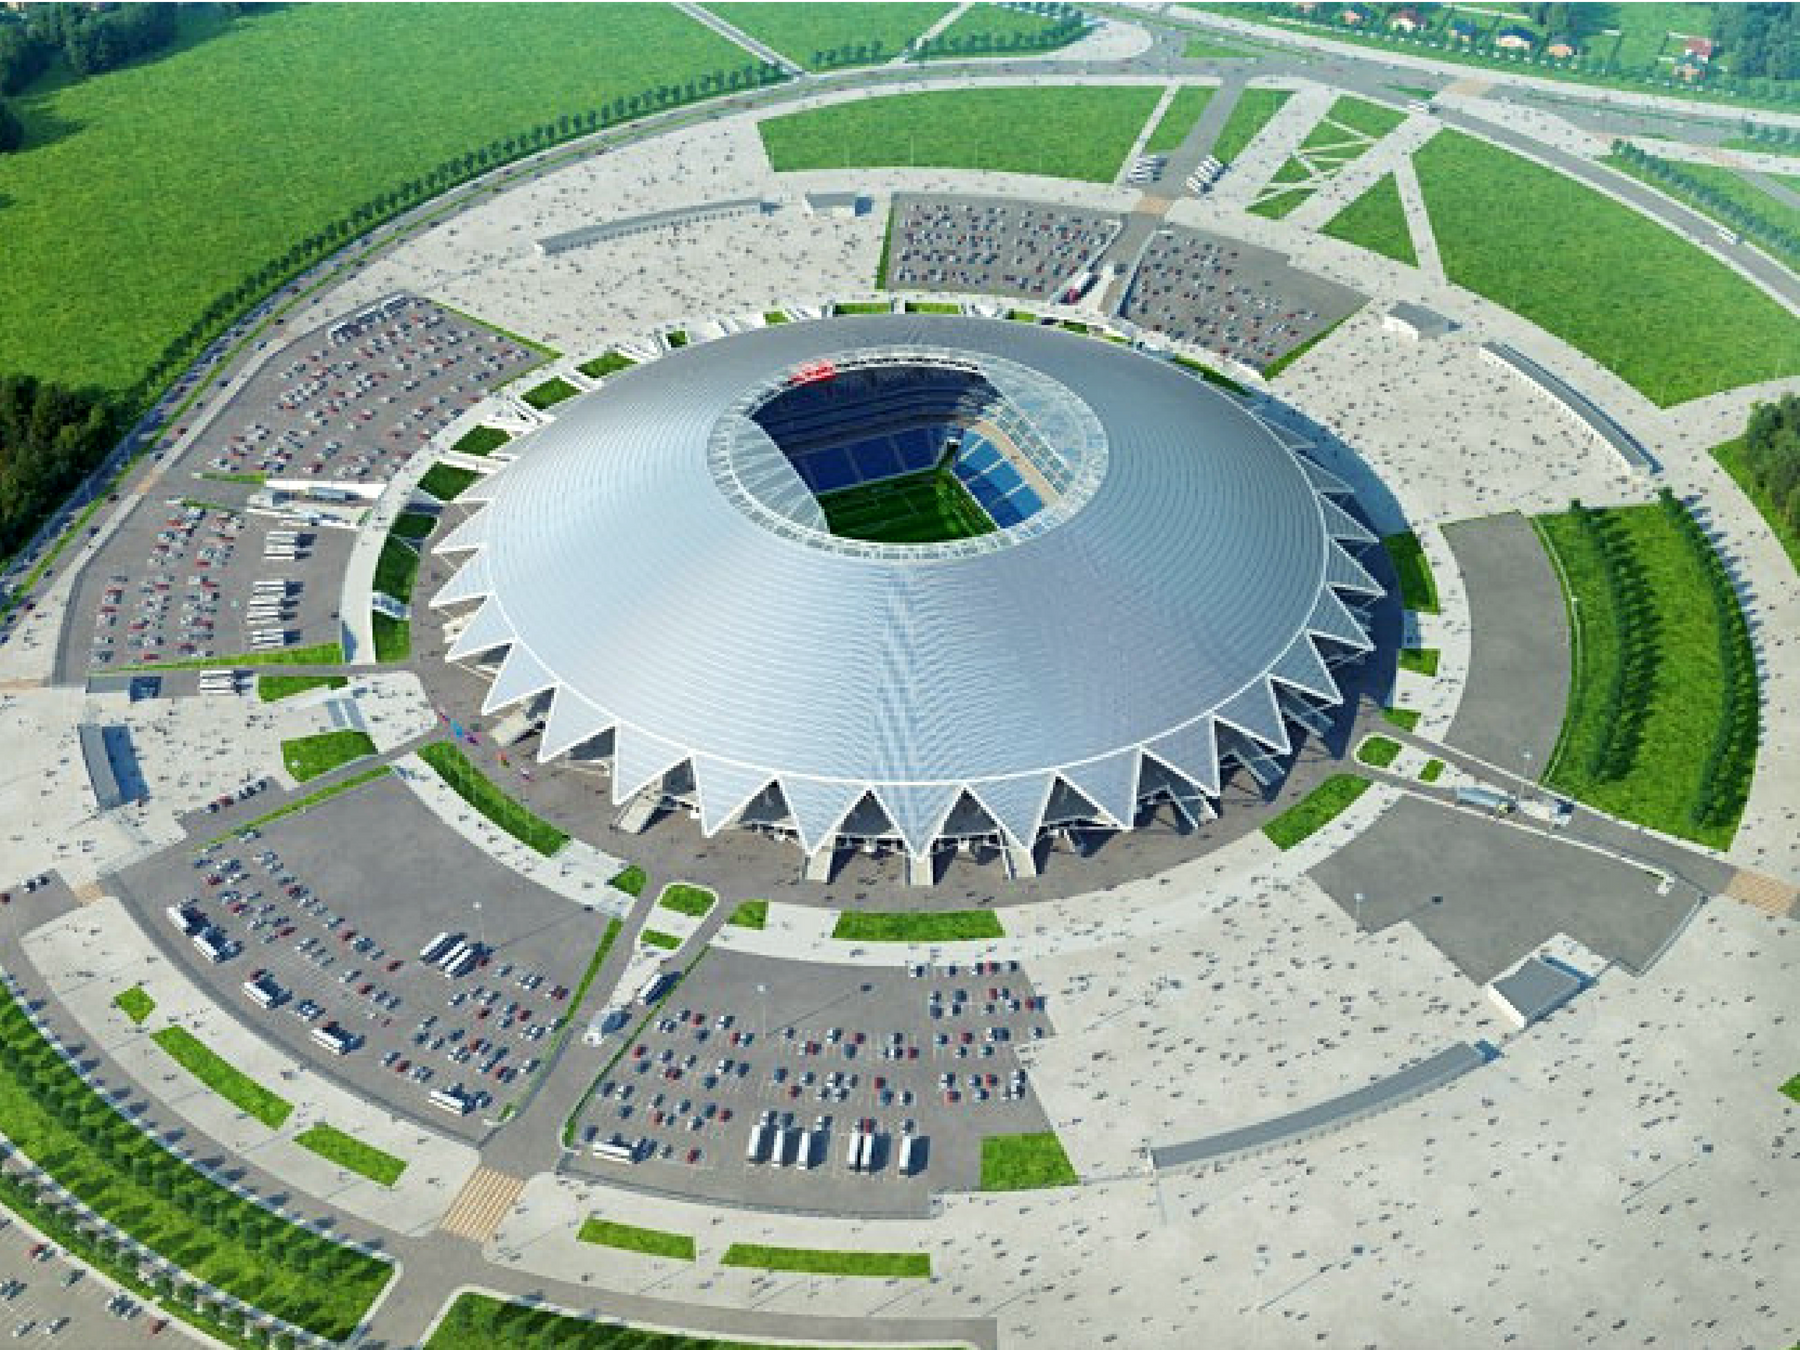 estádios-mais-legais-do-mundo-Calendário-da-copa-Samara Os 20 estádios mais legais do mundo Calendário Copa 2018 